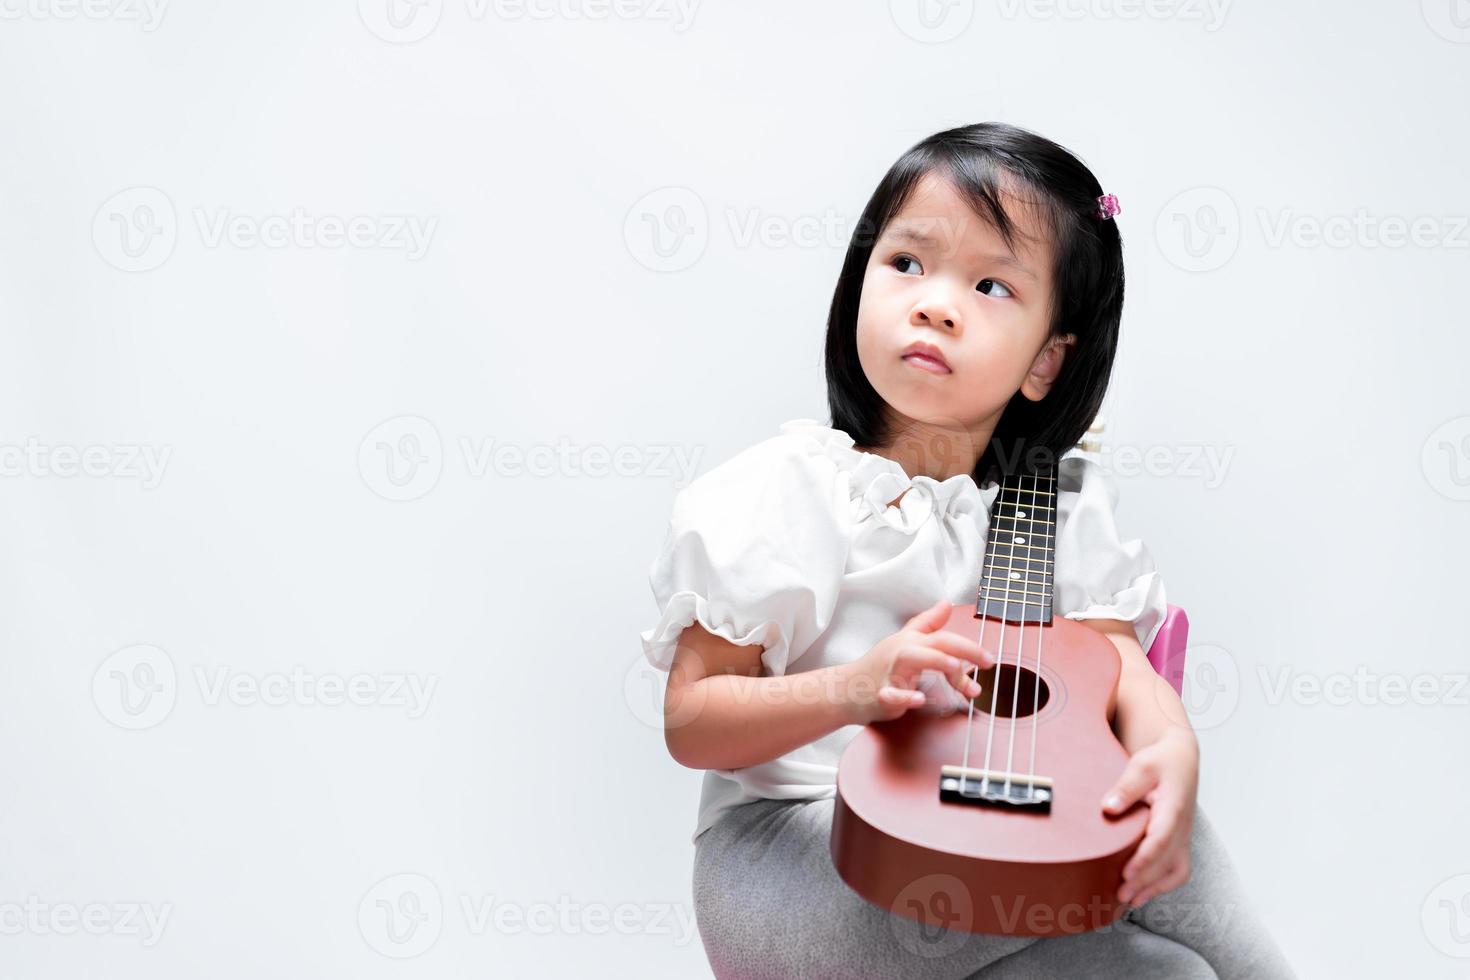 adorável criança menina coloca seu ukulele no ombro. criança toca instrumentos musicais, olhando para os lados. em fundo branco do estúdio. foto